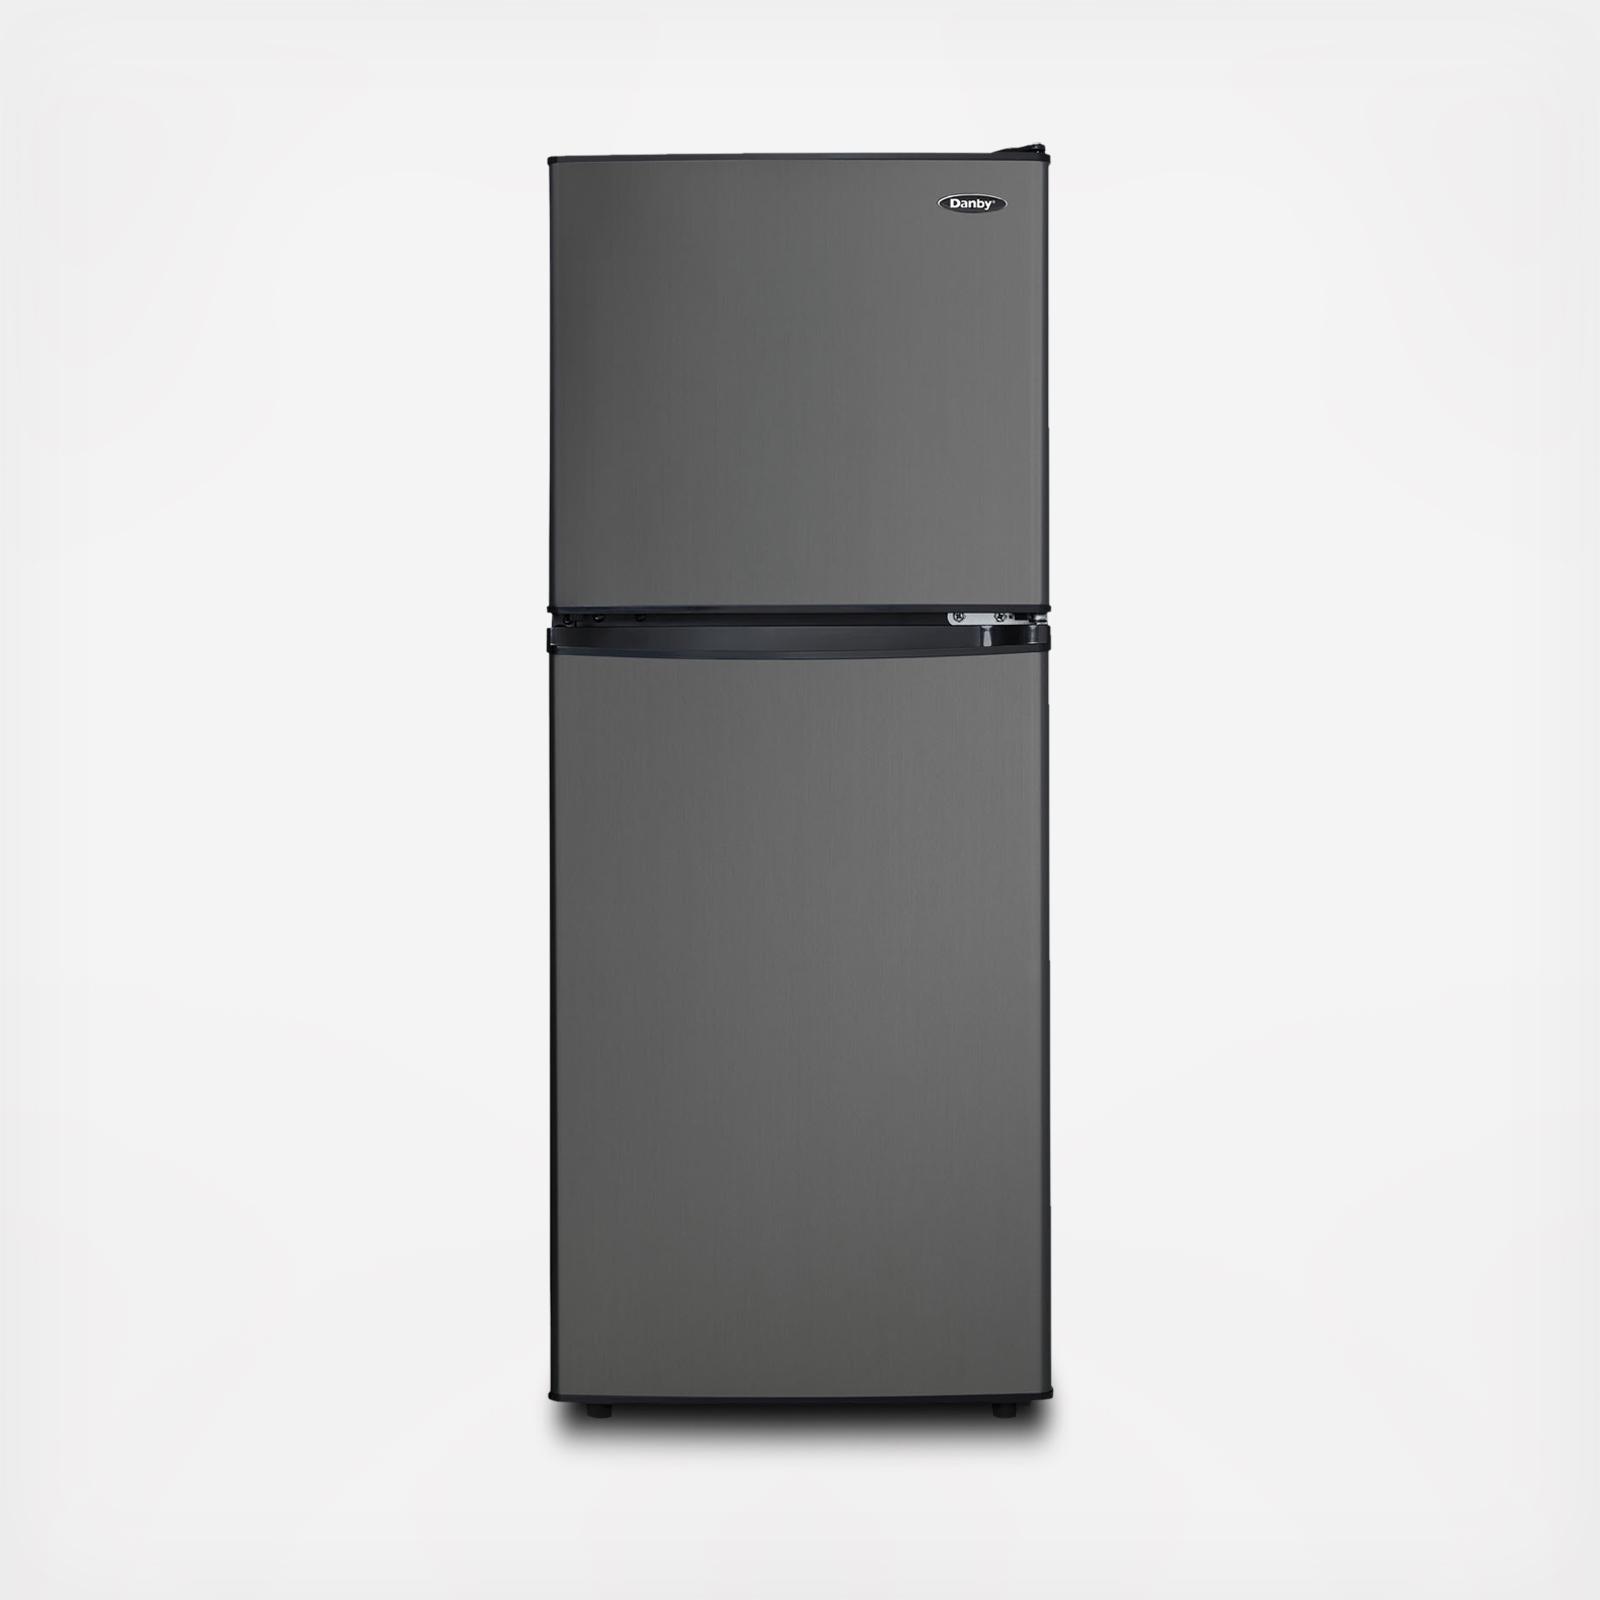 Danby Non-Slip Cabinet Refrigerator Tray